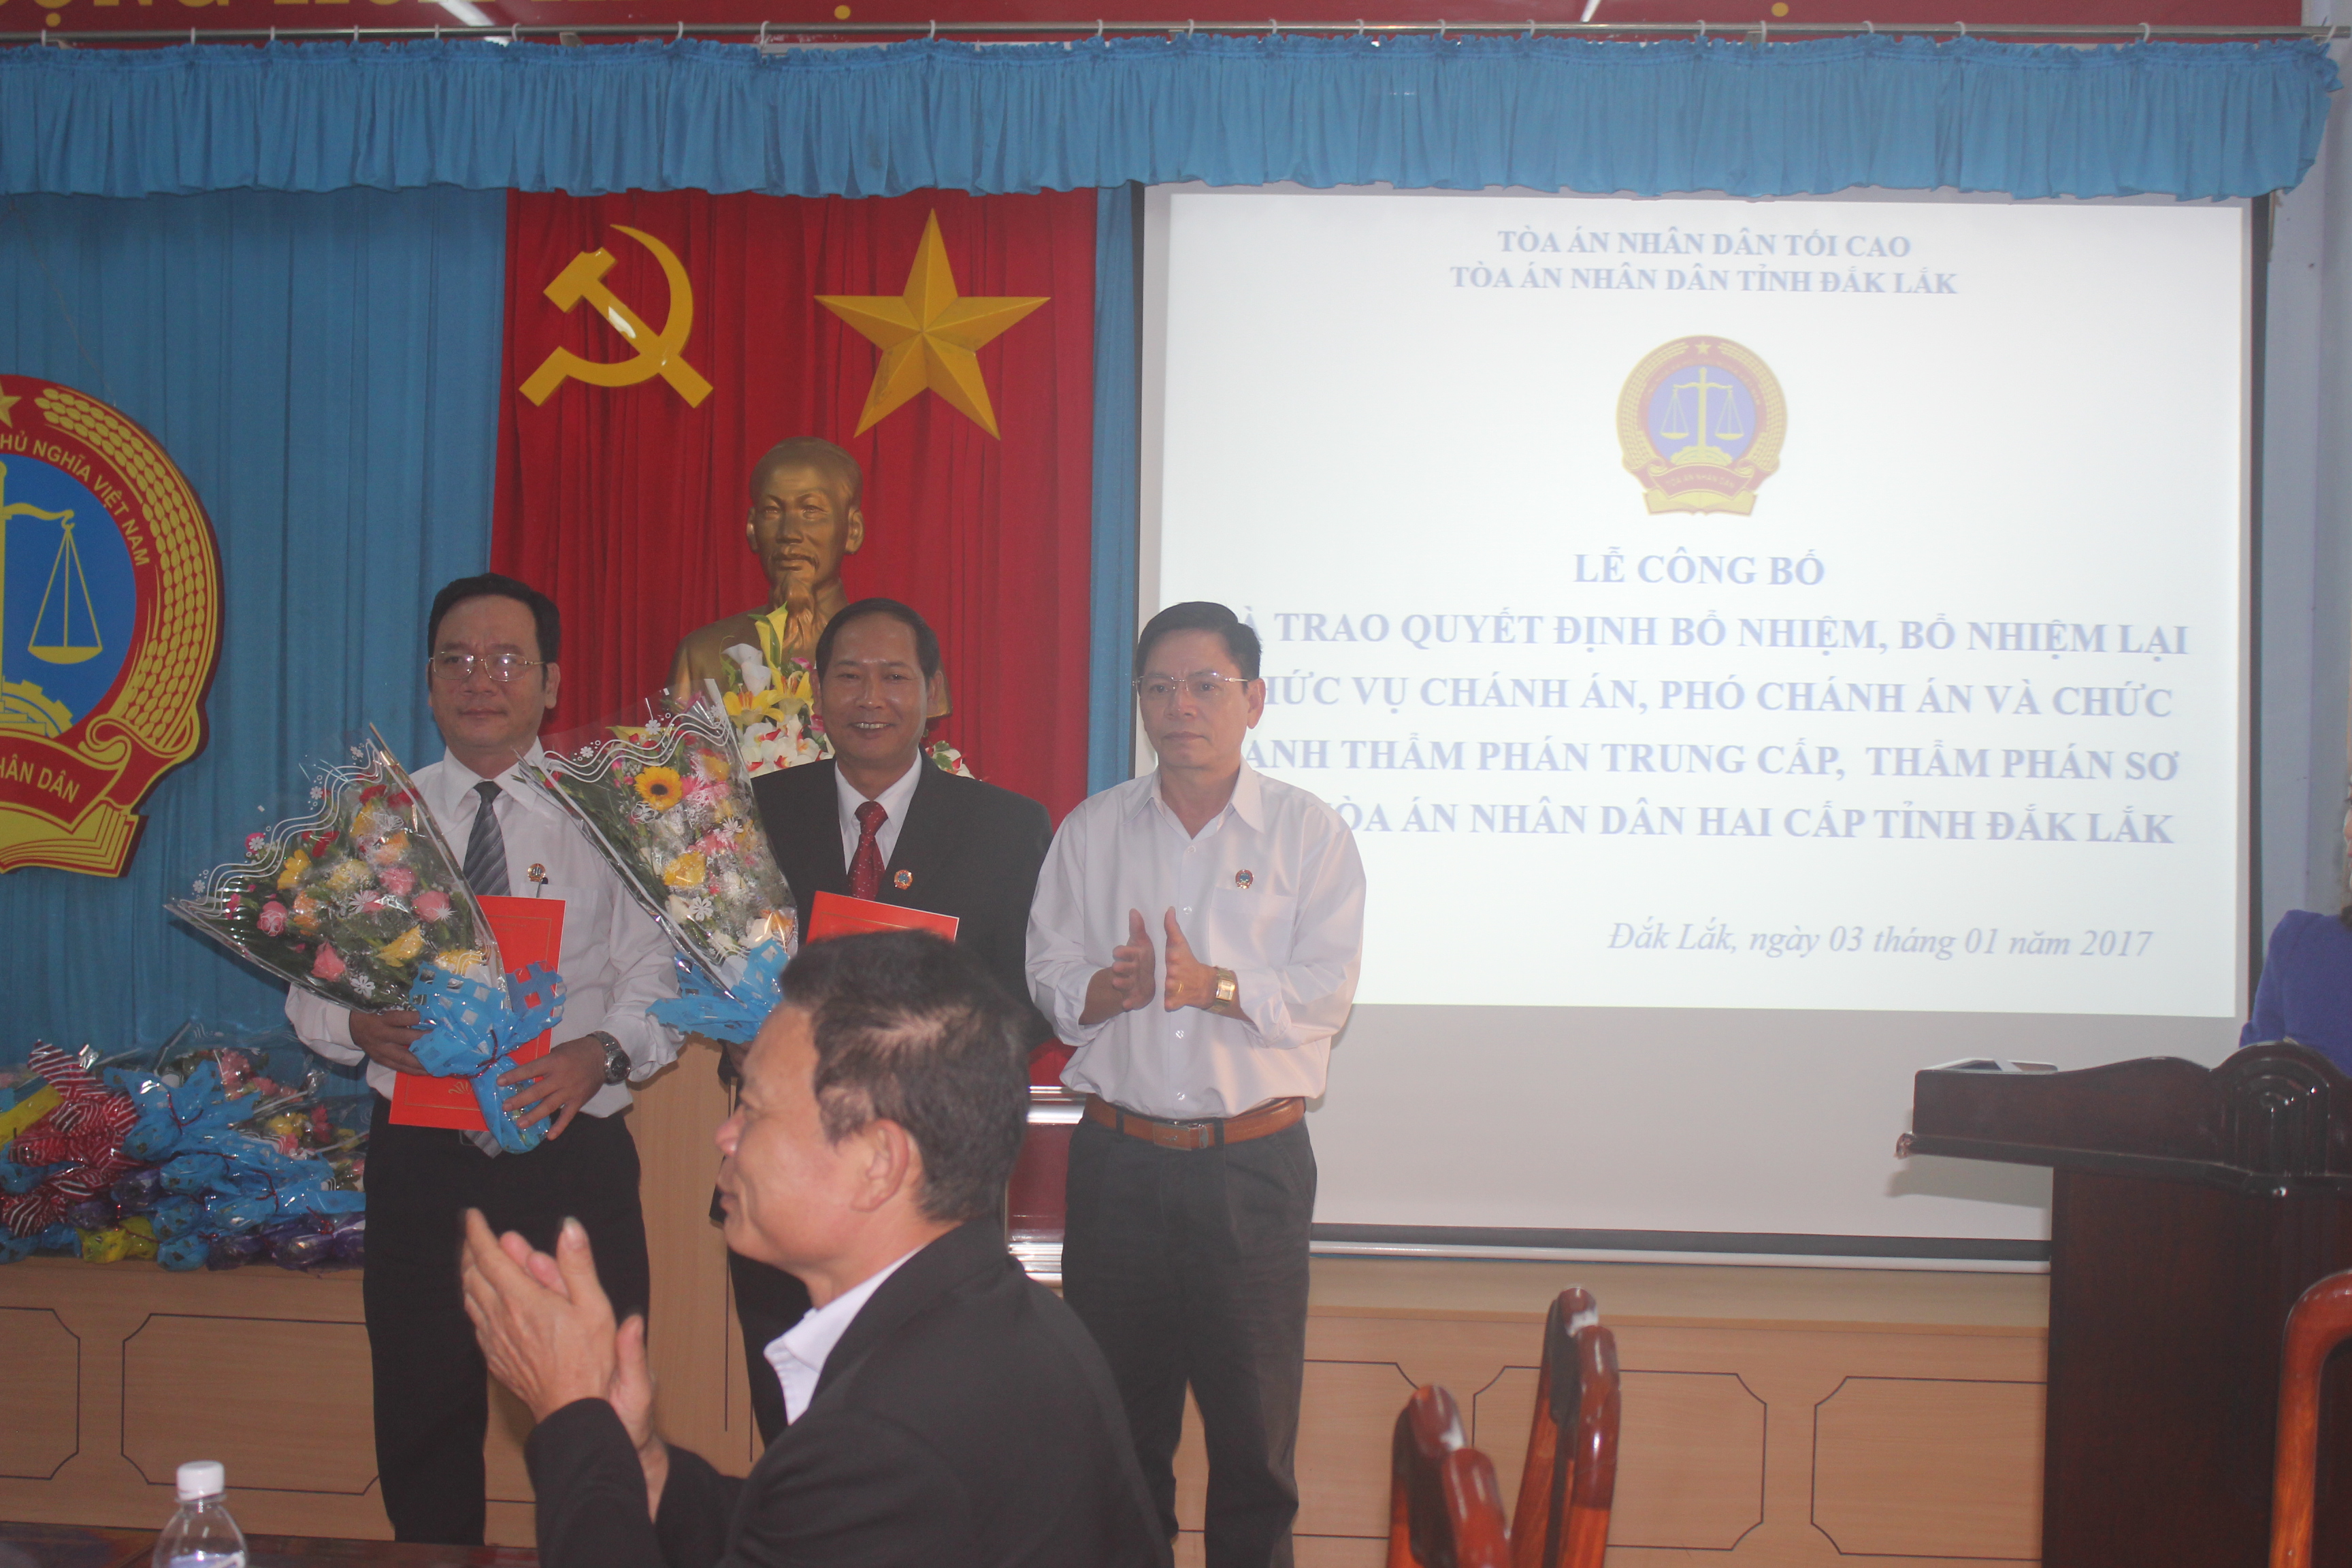 Tòa án nhân dân tỉnh Đắk Lắk tổ chức Lễ trao quyết định bổ nhiệm, bổ nhiệm lại Thẩm phán Trung cấp, sơ cấp và chức vụ quản lý TAND hai cấp tỉnh Đắk Lắk